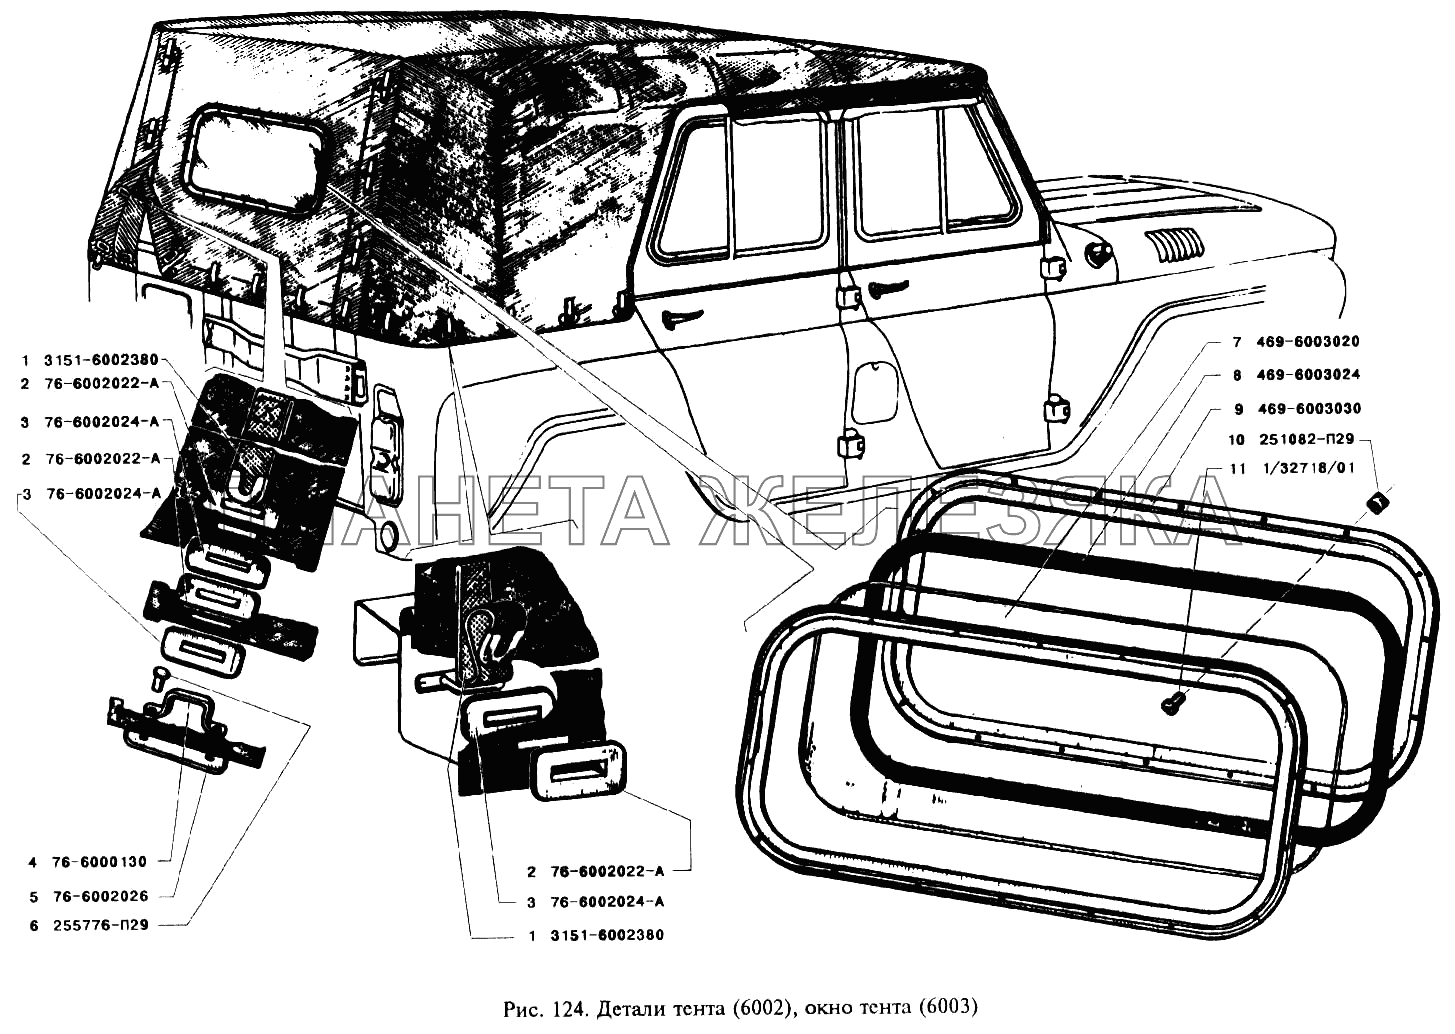 Детали тента и окно тента УАЗ-3151